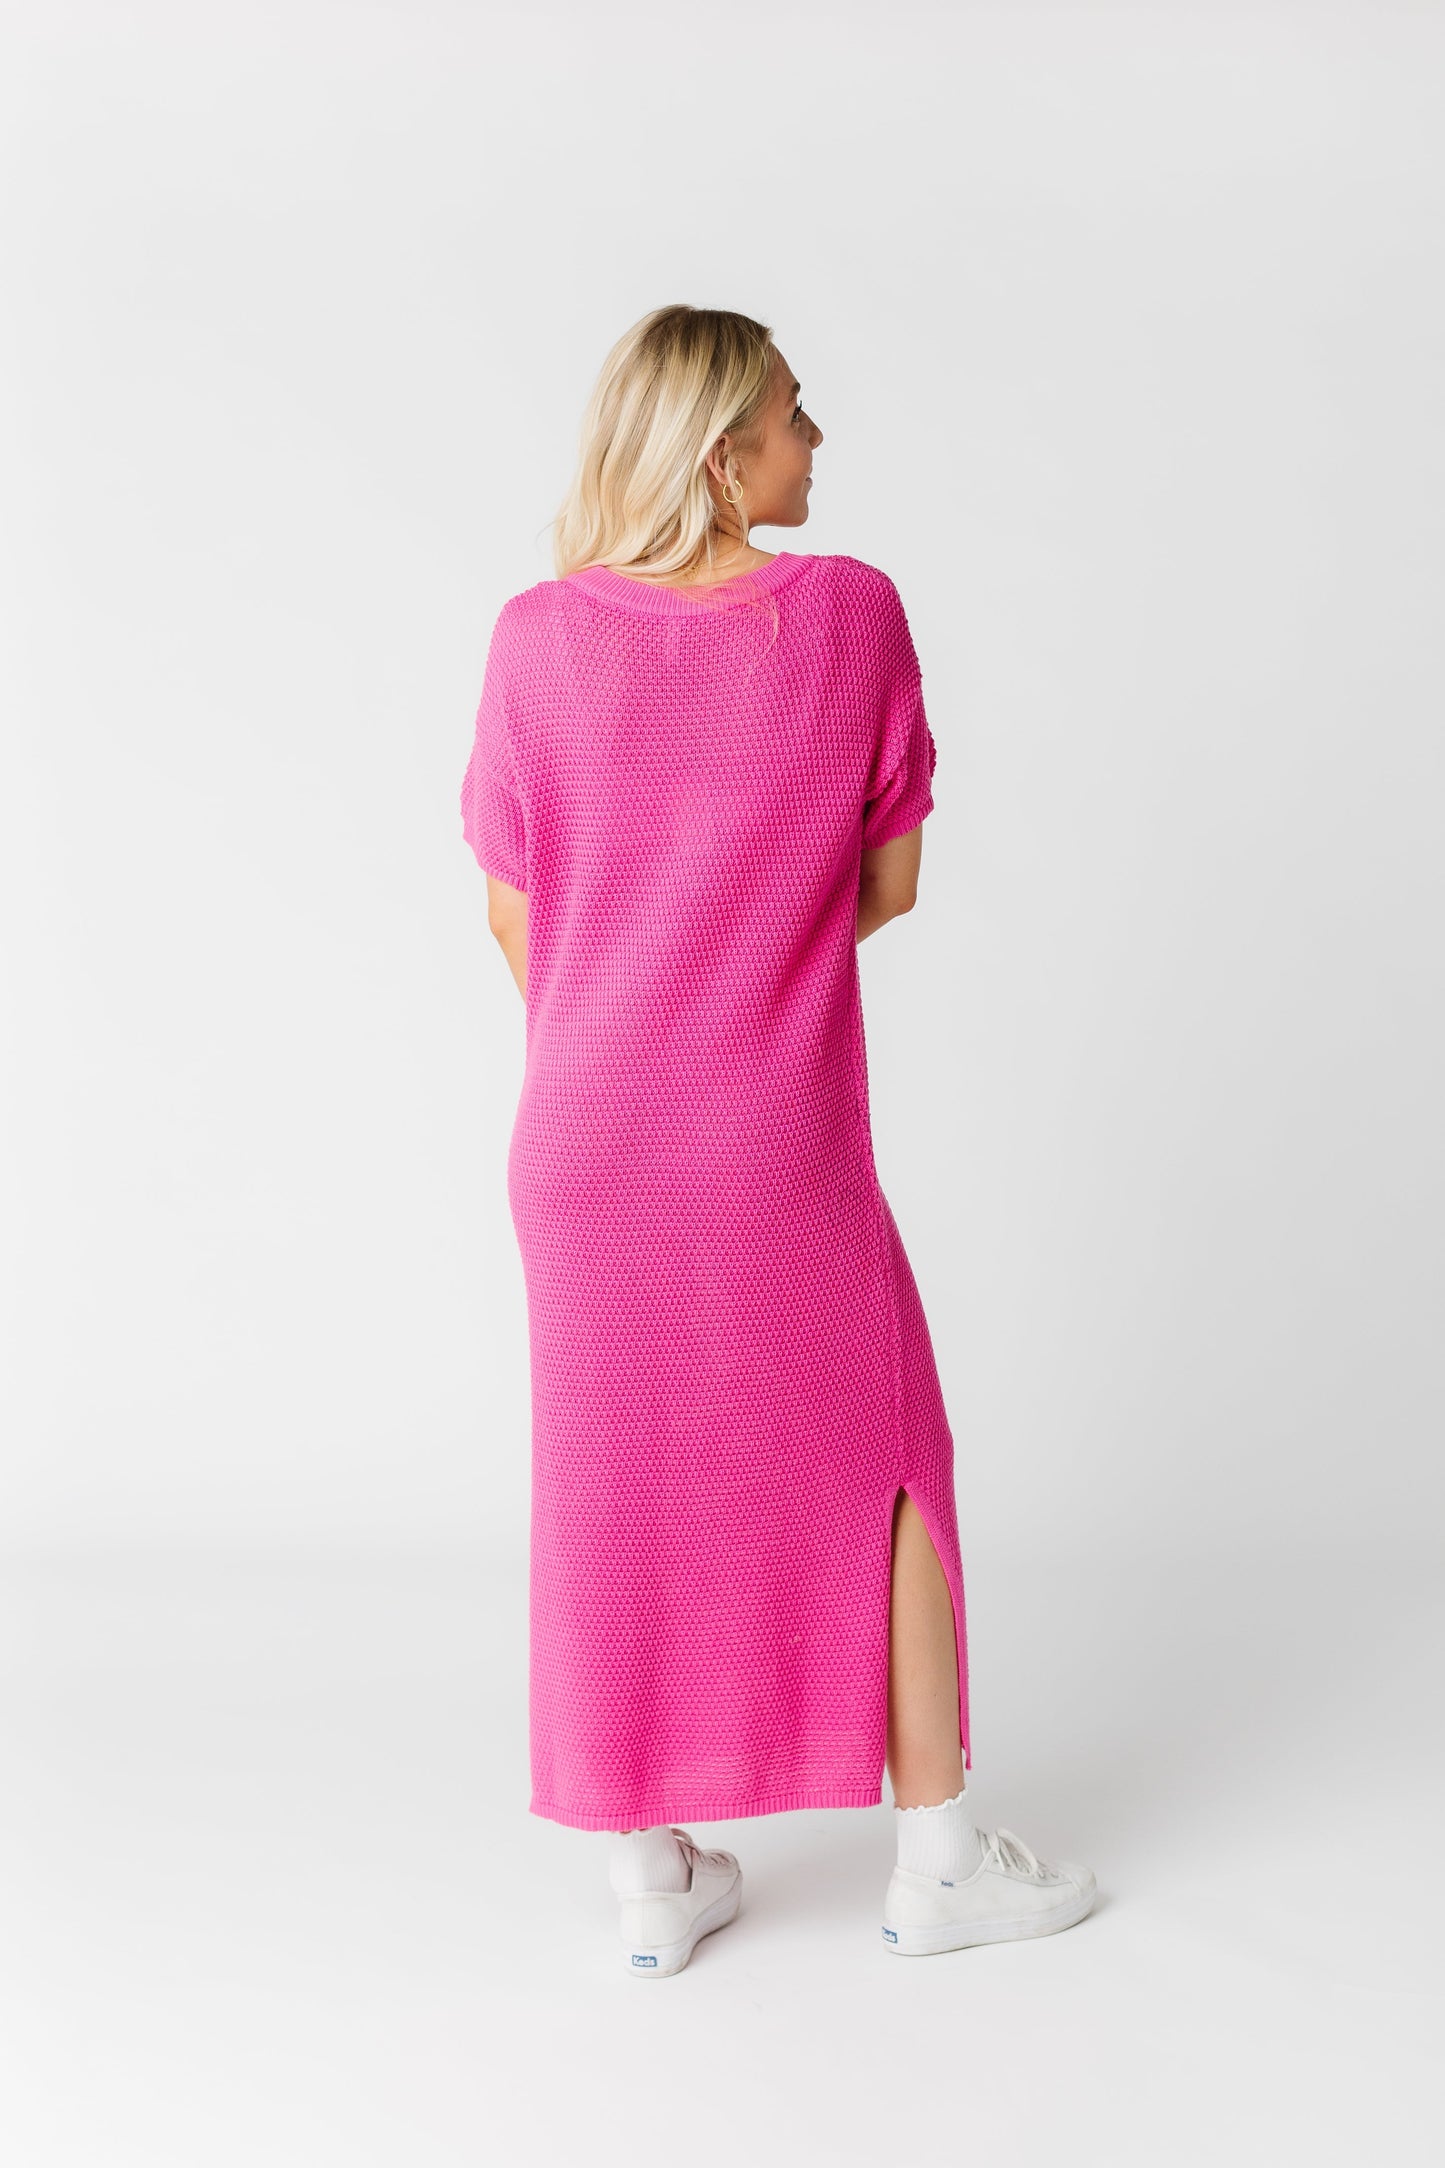 To Be Free Knit Dress WOMEN'S DRESS Wishlist 